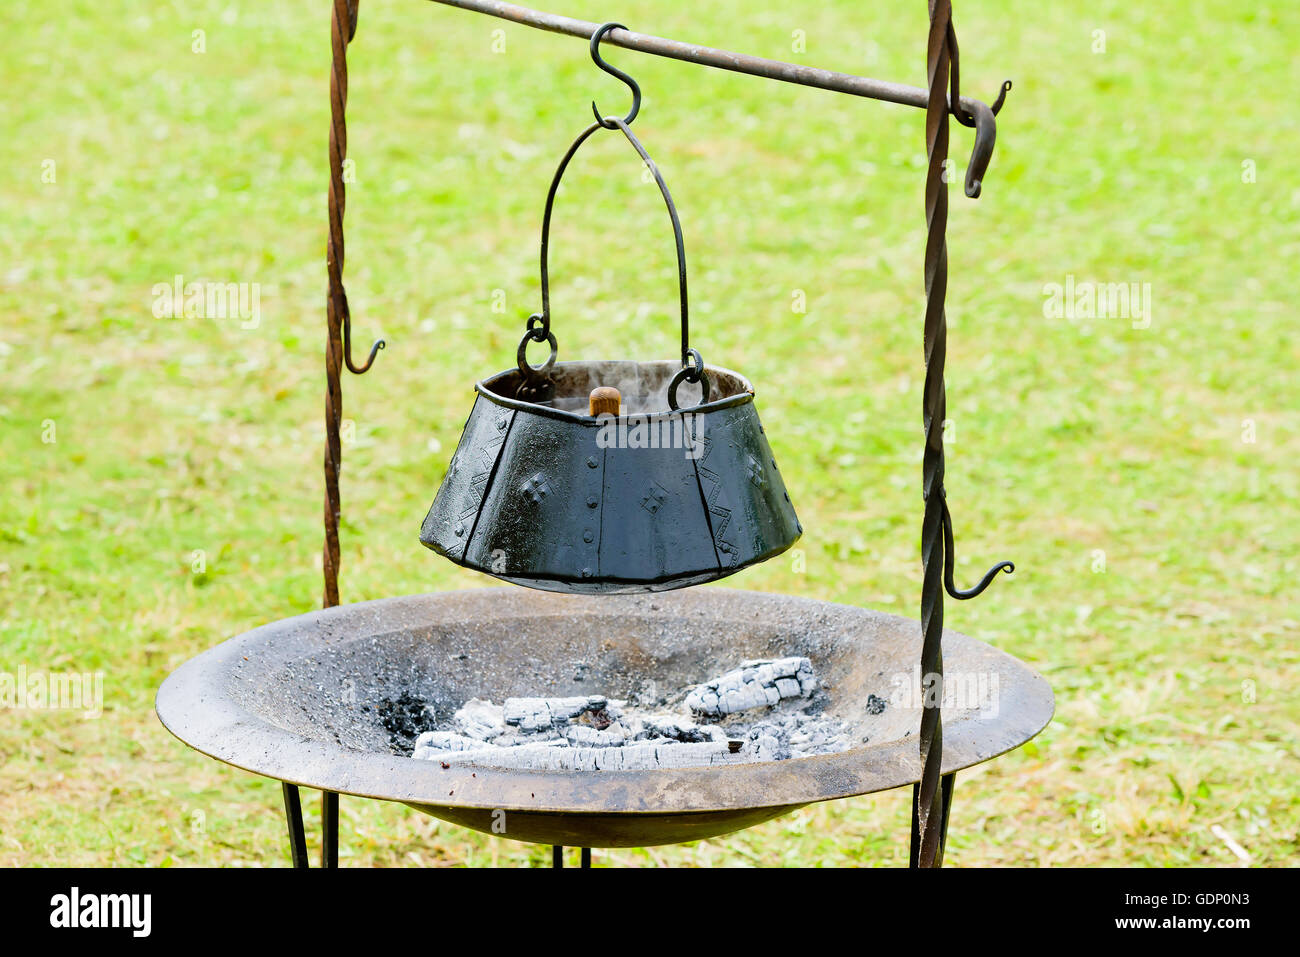 Cucina Outdoor pentola appesa sopra di legno bruciato e cenere. Pentola è fatta a mano in ferro annerito con rivetti. Foto Stock